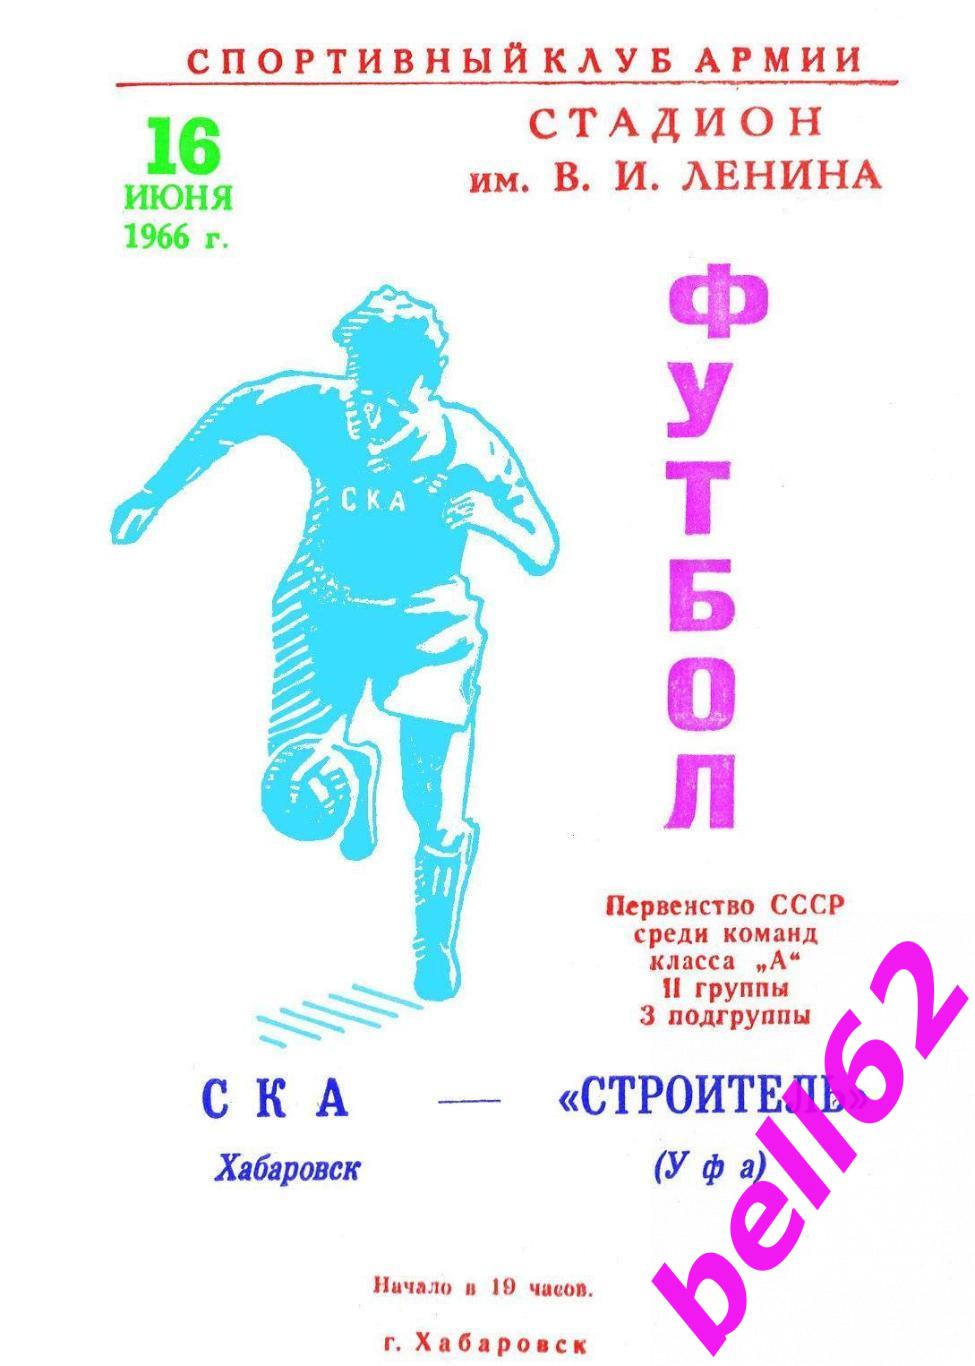 СКА (Хабаровск)-Строитель (Уфа)-16.06.1966 г. См. ниже.